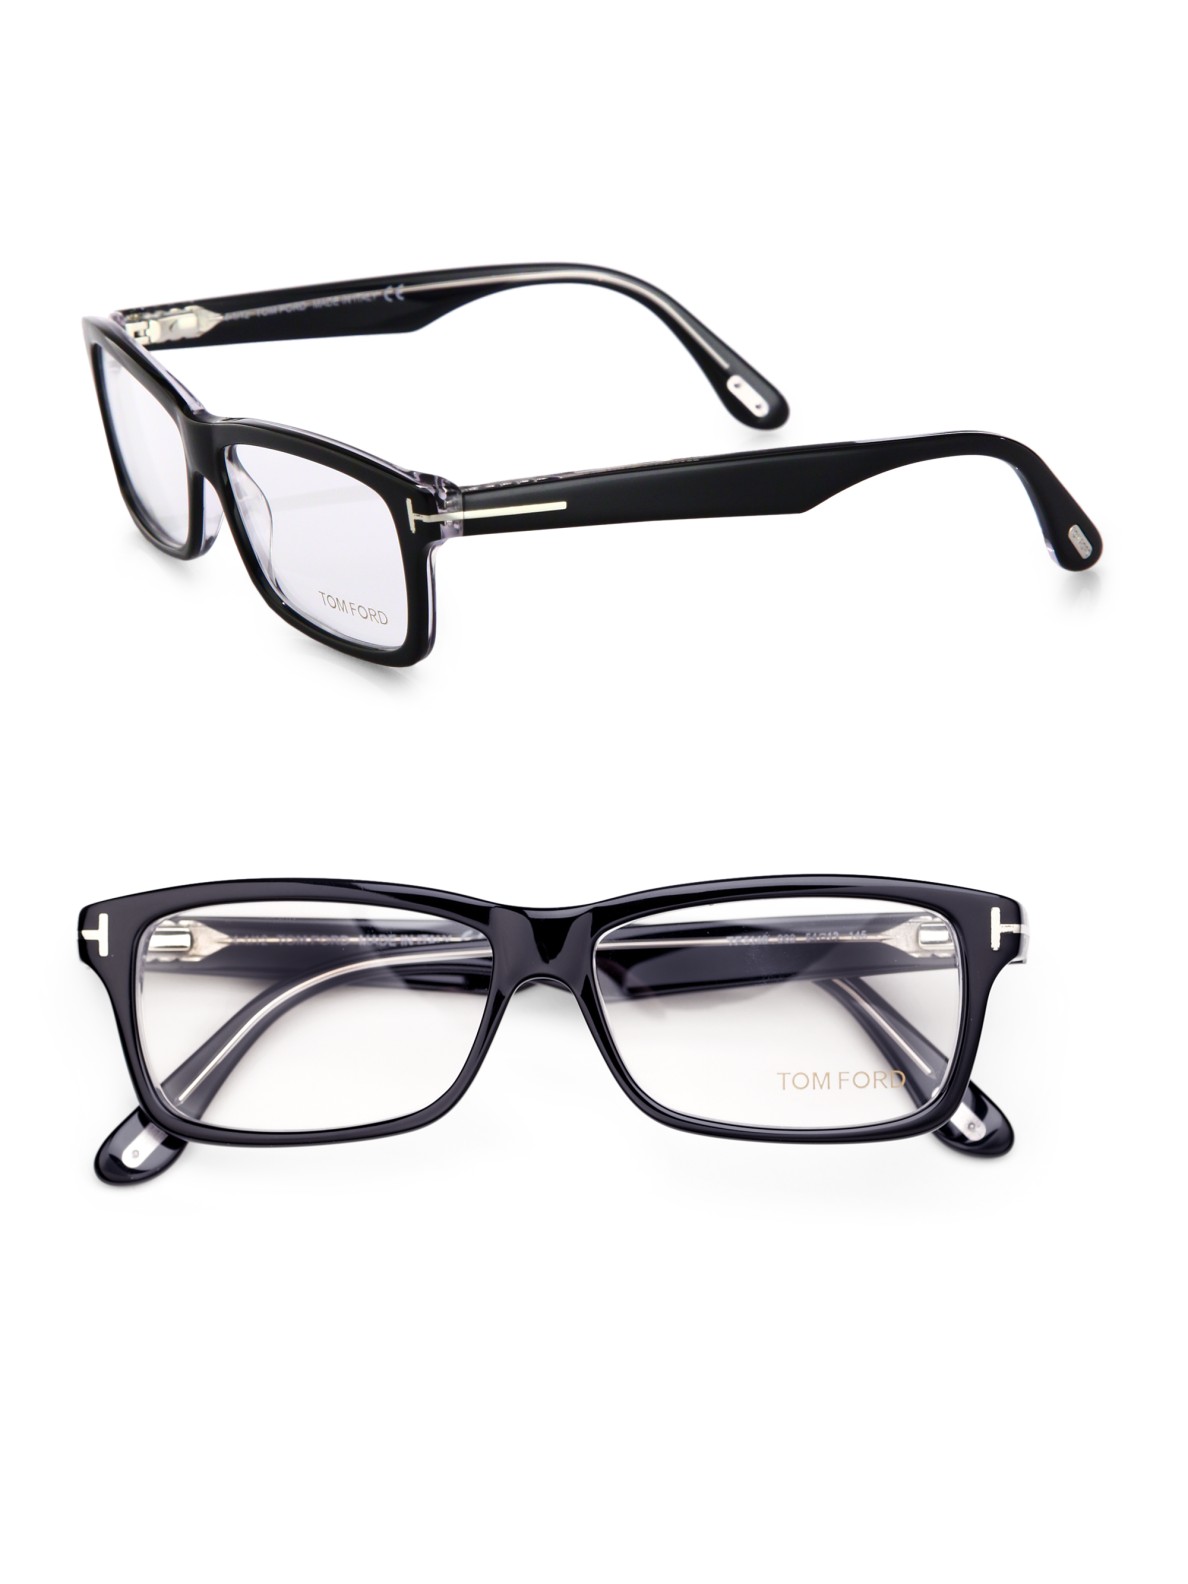 Tom ford eyewear plastic optical frames #2